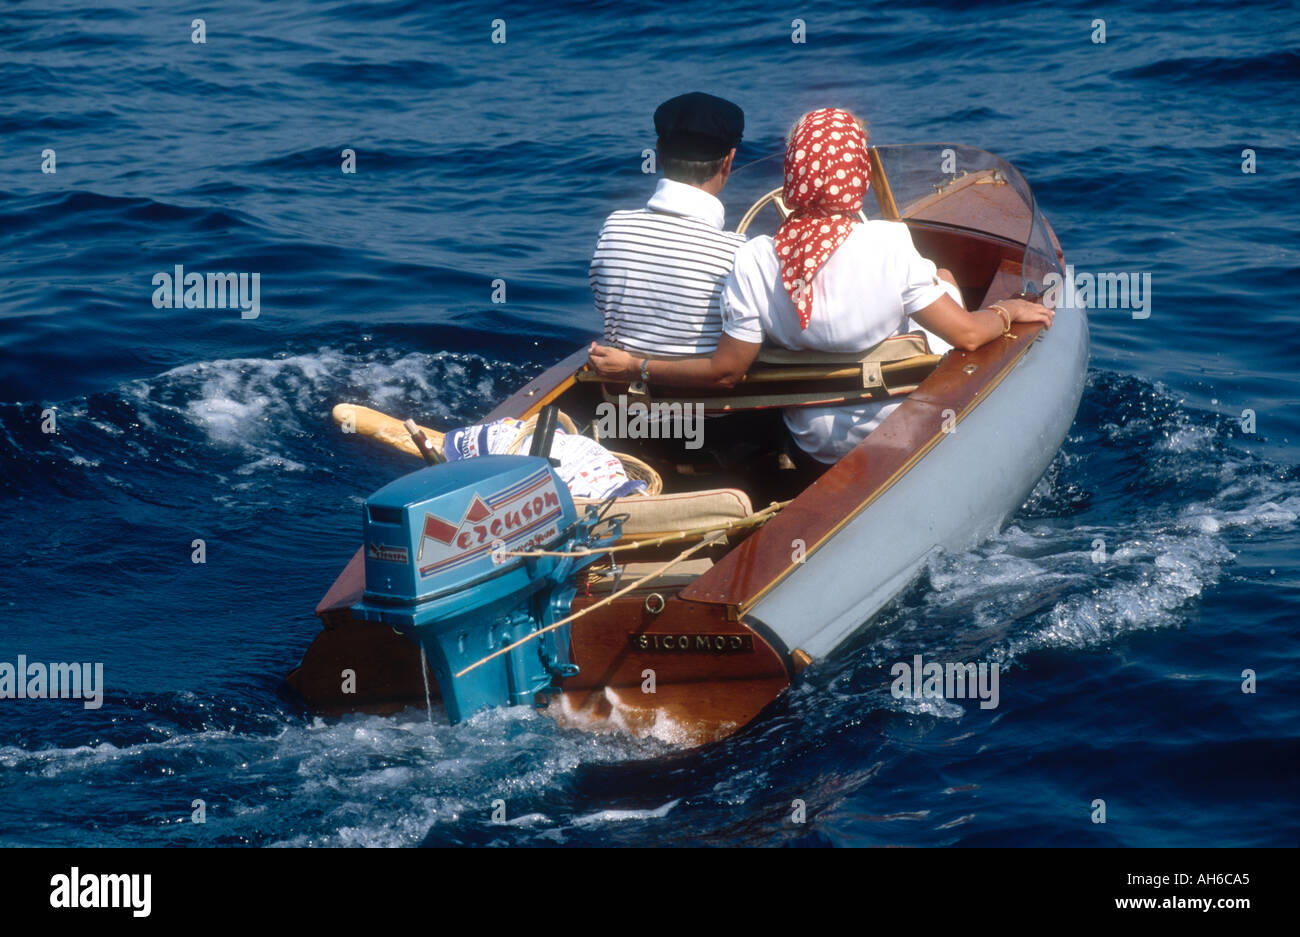 Dans un couple au début des années 1950 Cheaveau Rigid Inflatable Boat Monaco Monte Carlo France Méditerranée Banque D'Images